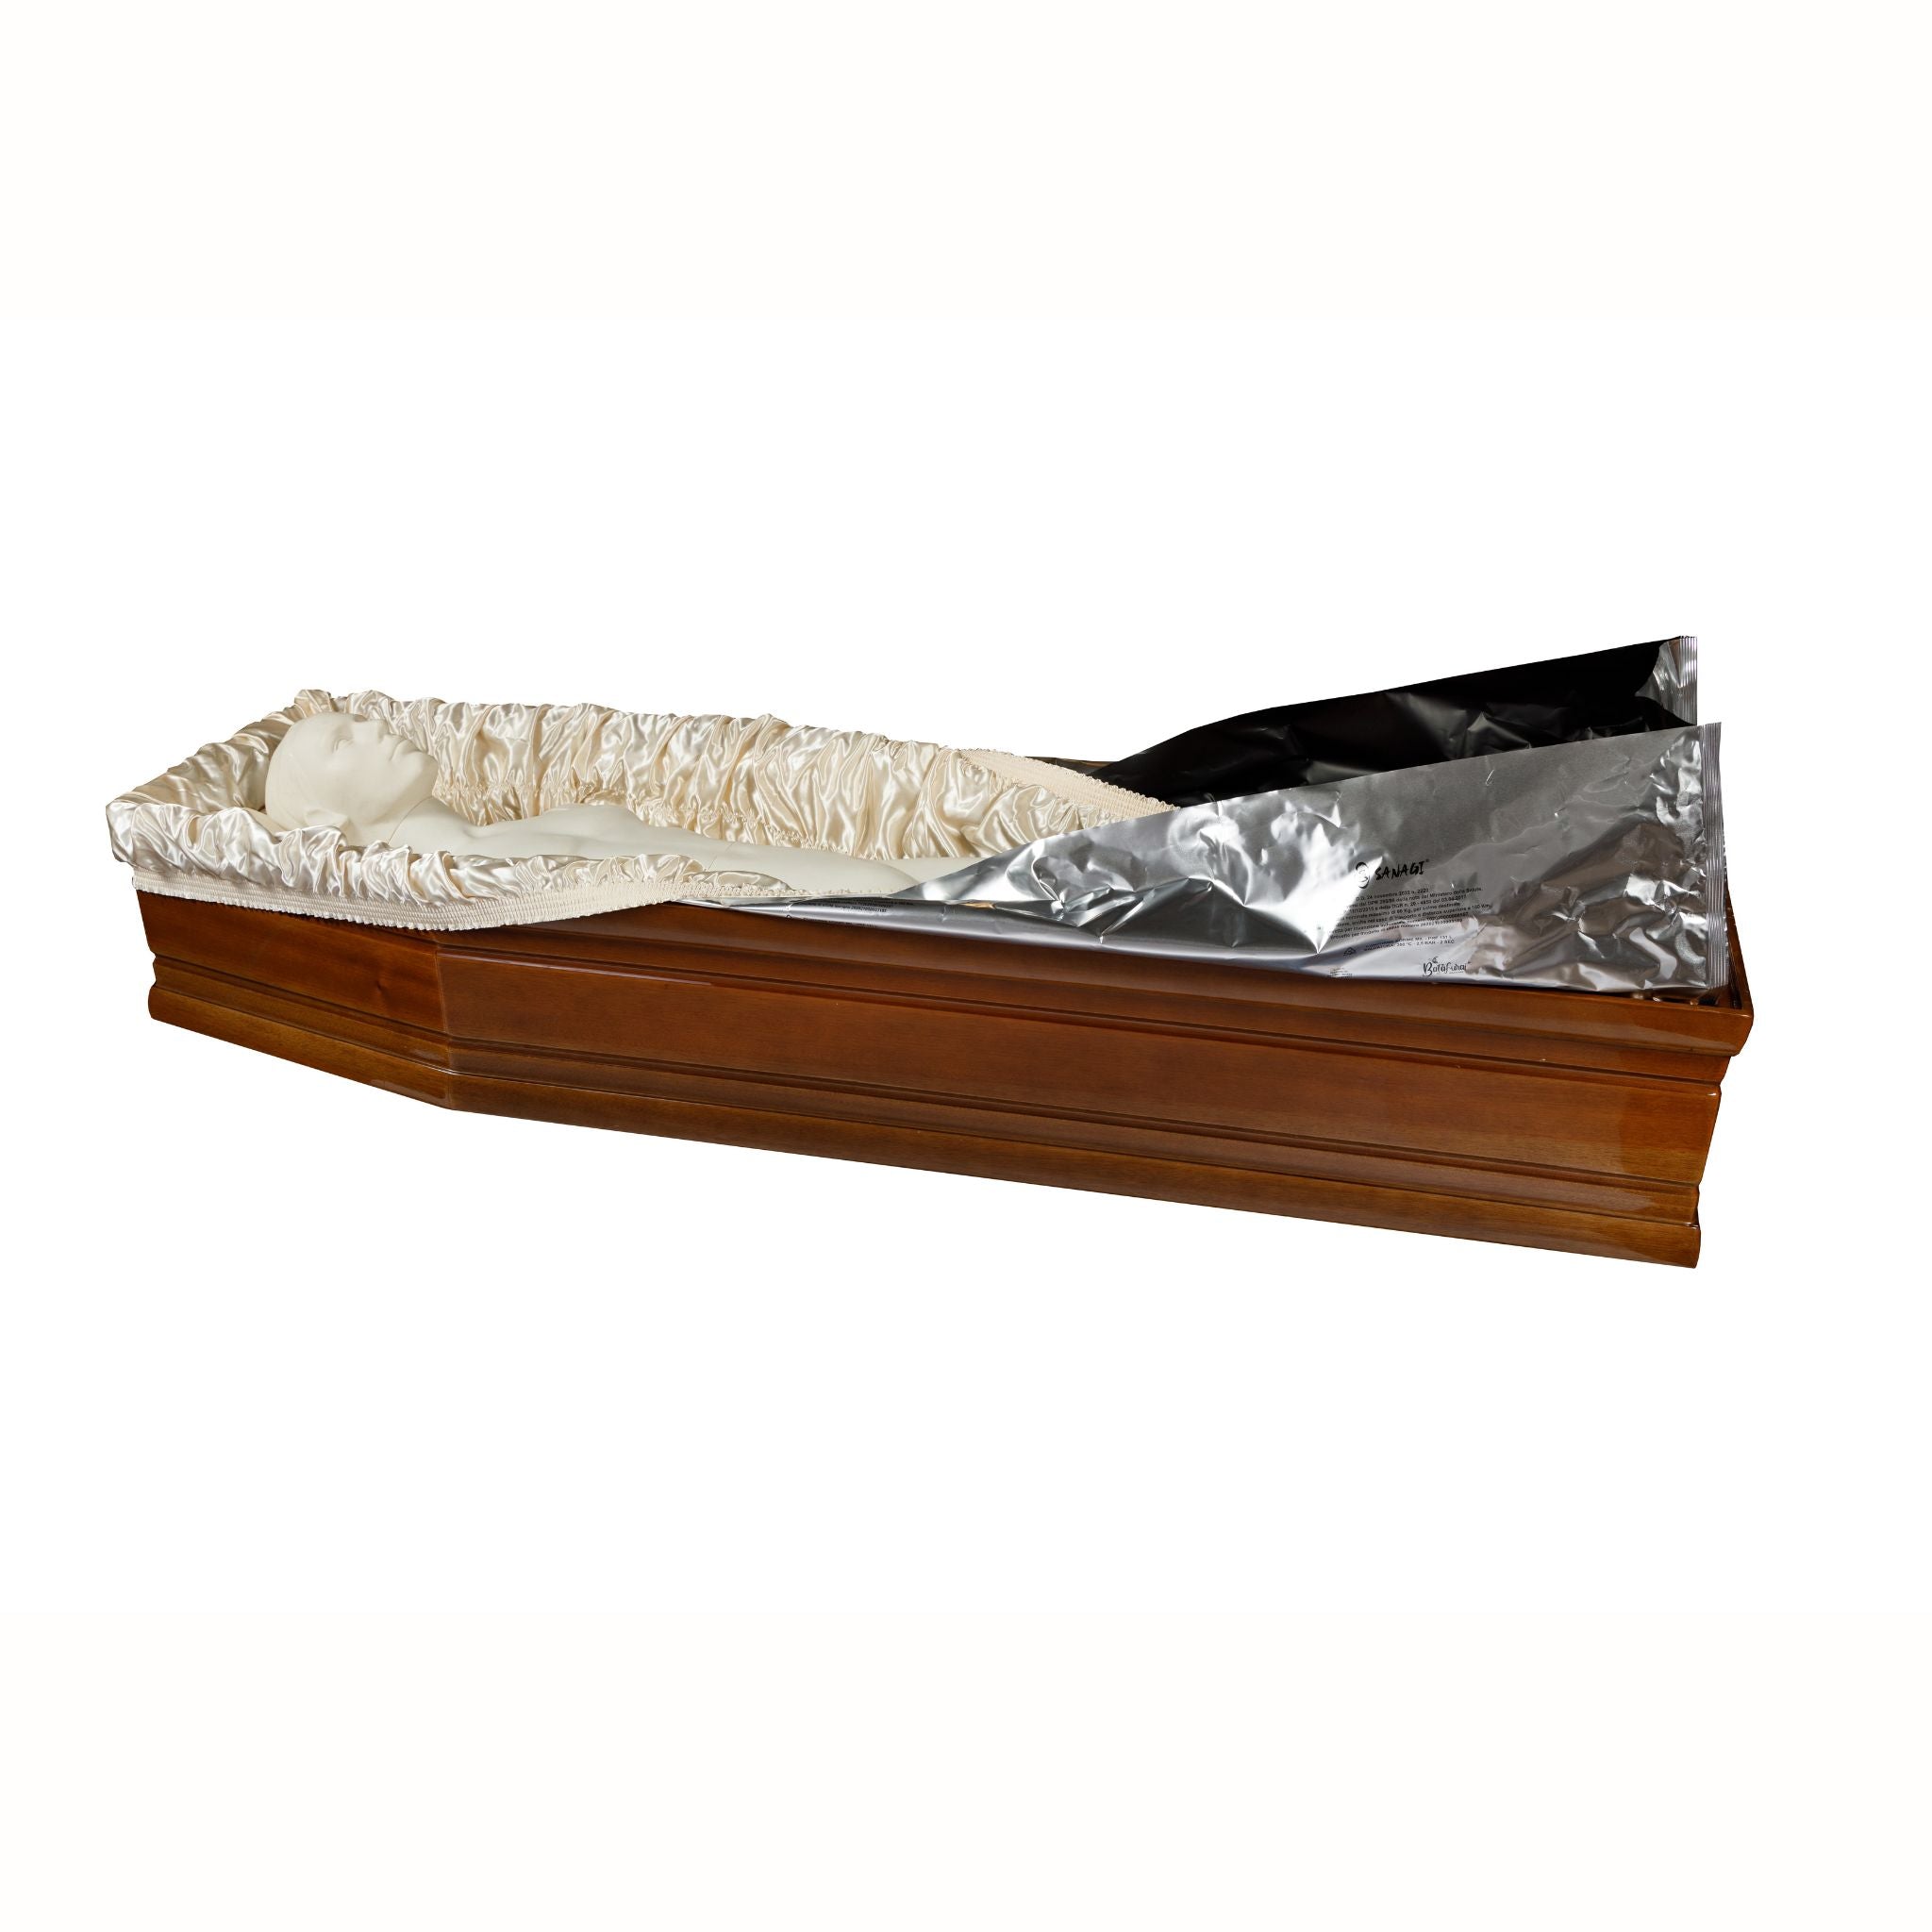 Ceabis foil coffin Sanagi - 0